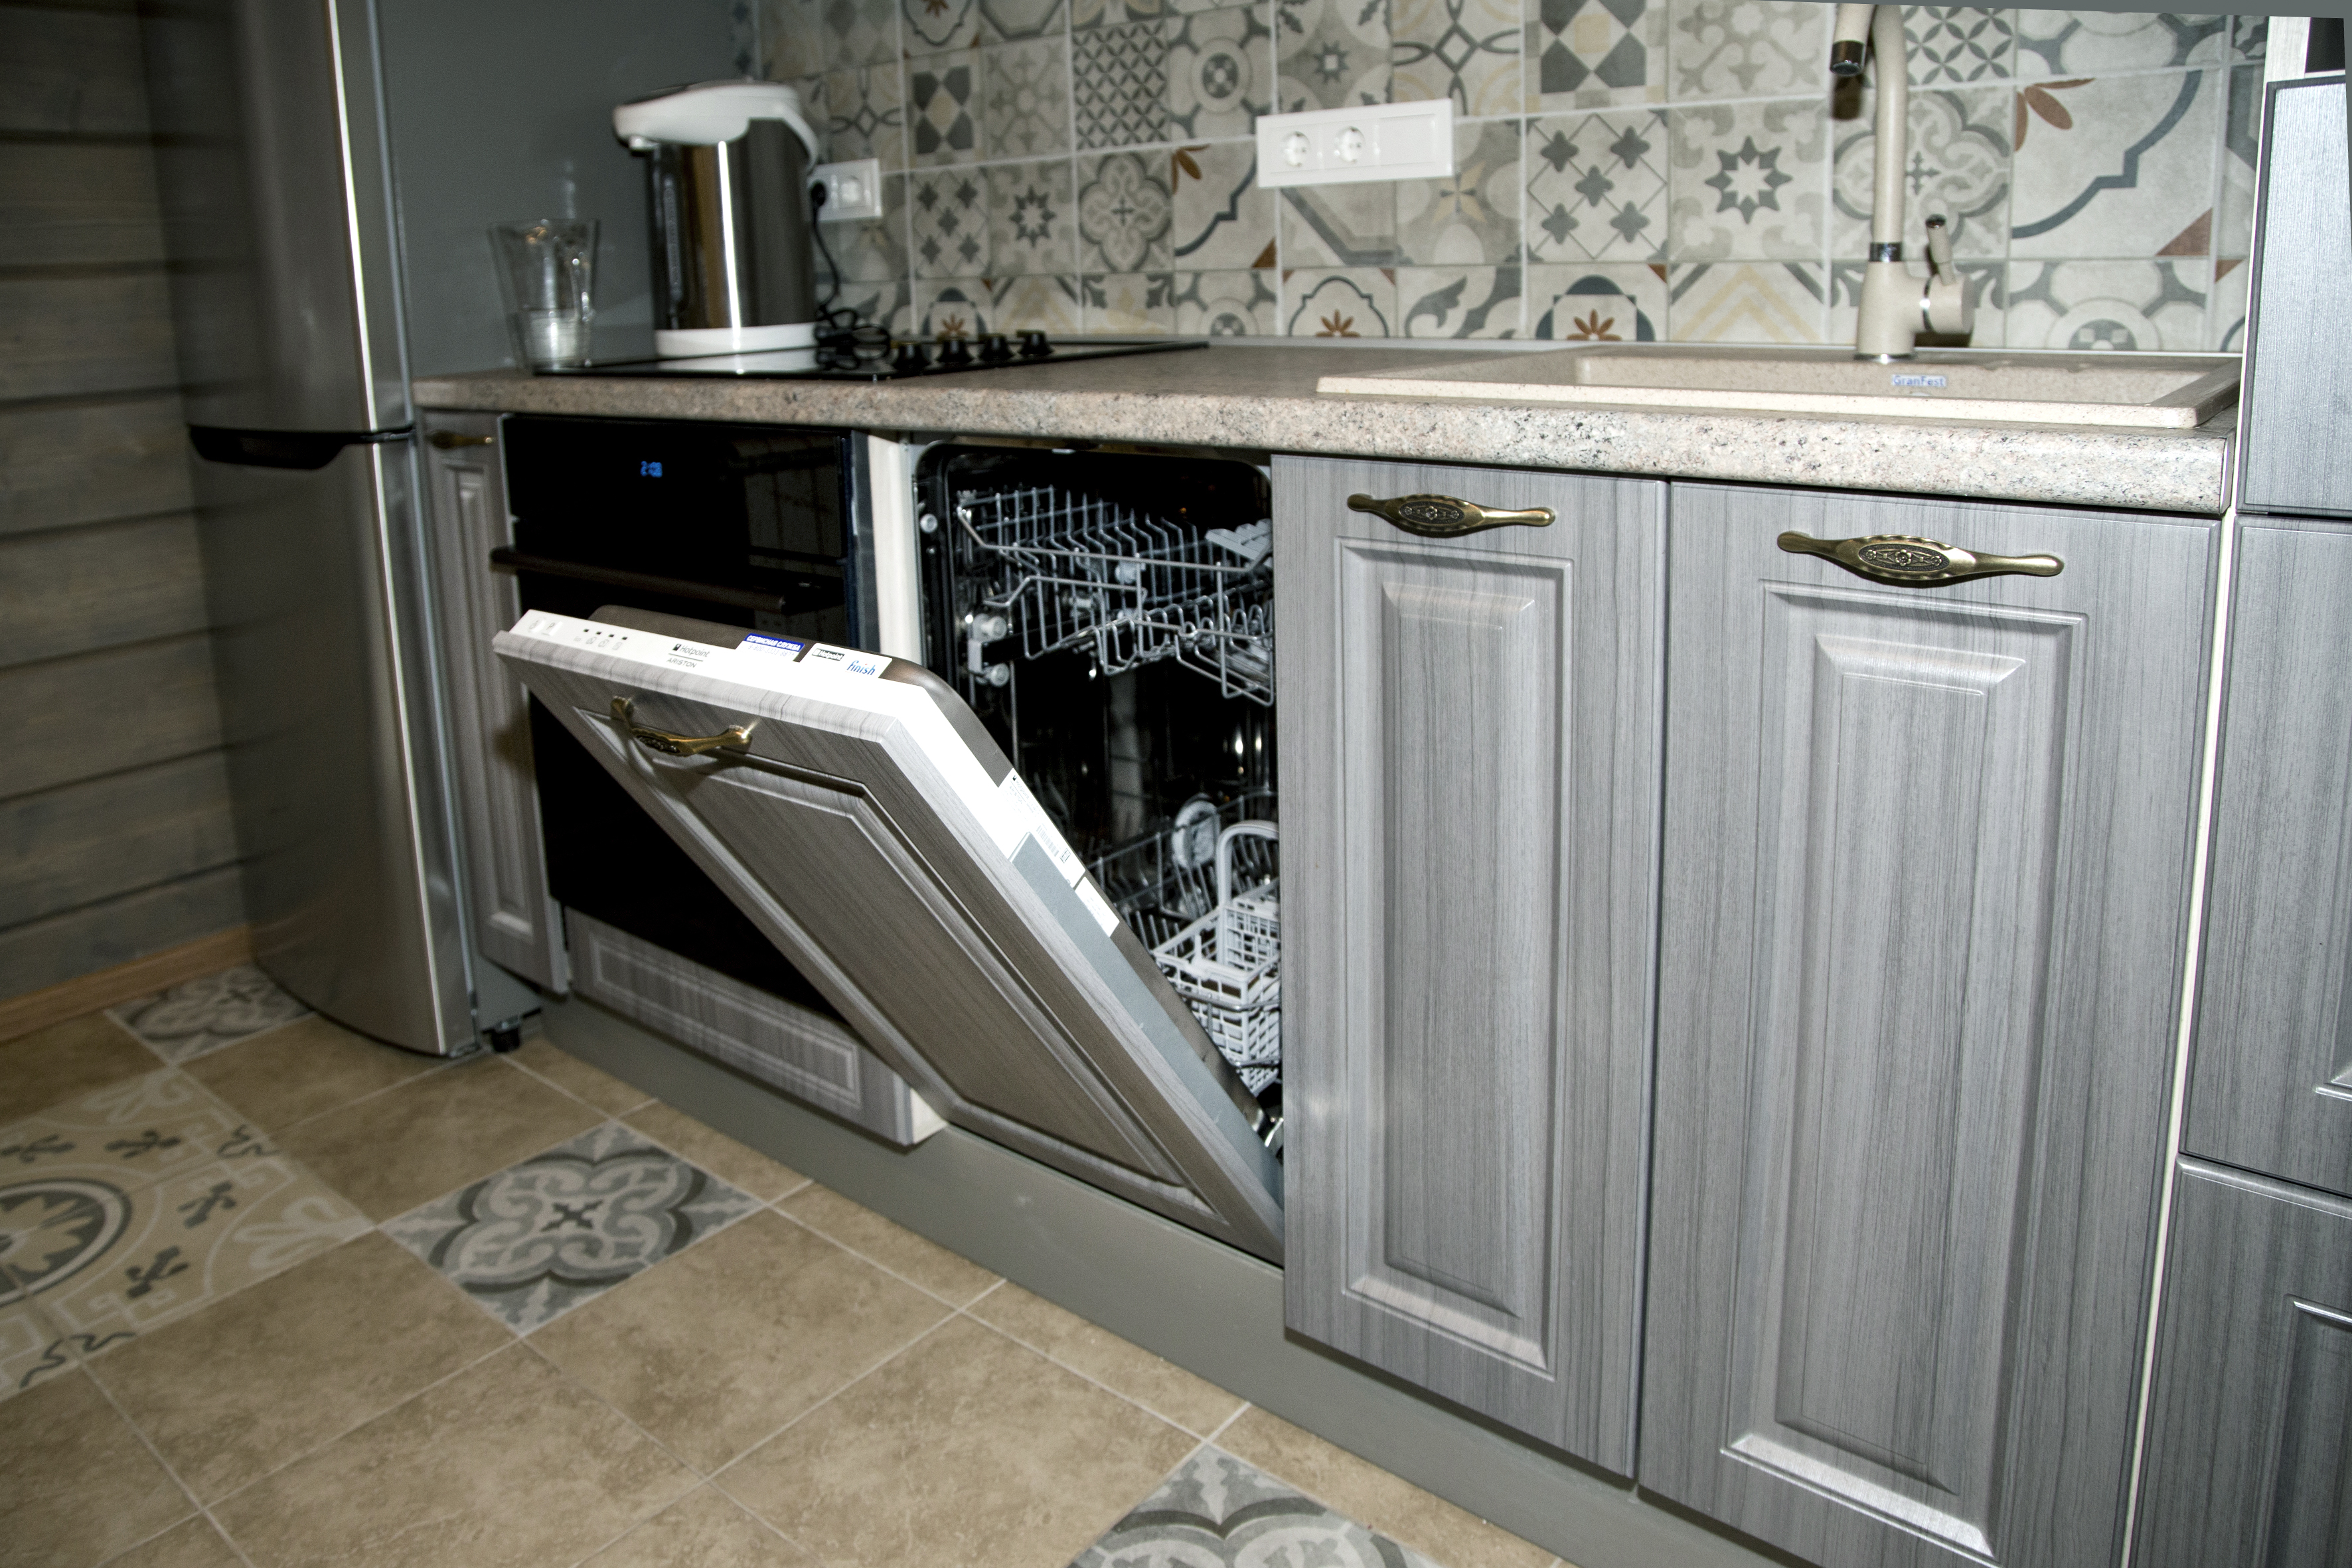 Кухня со встроенной посудомоечной машиной